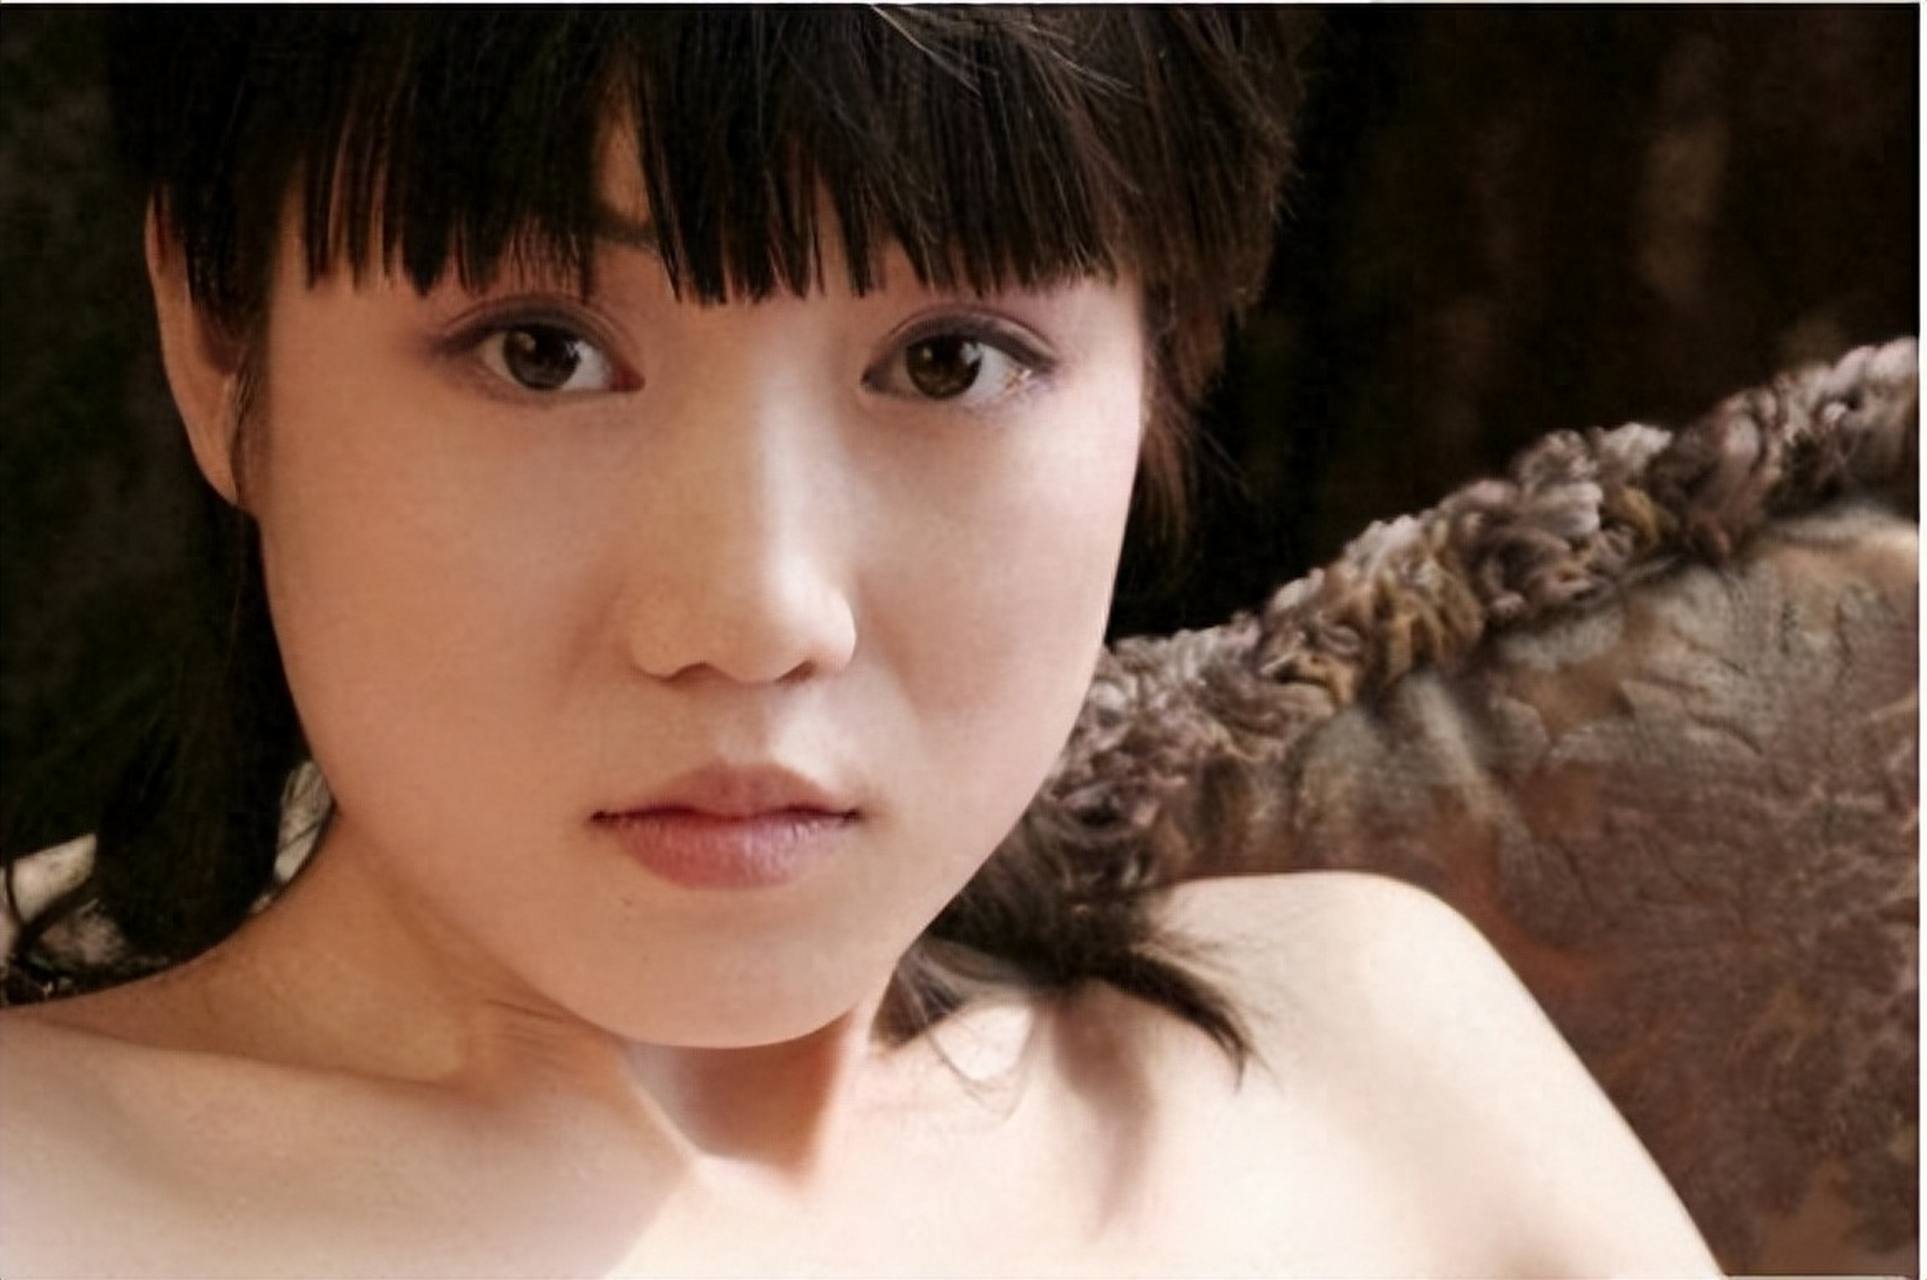 最红裸模张筱雨:22岁时拍写真火爆全网,如今将近40岁仍单身 2007年